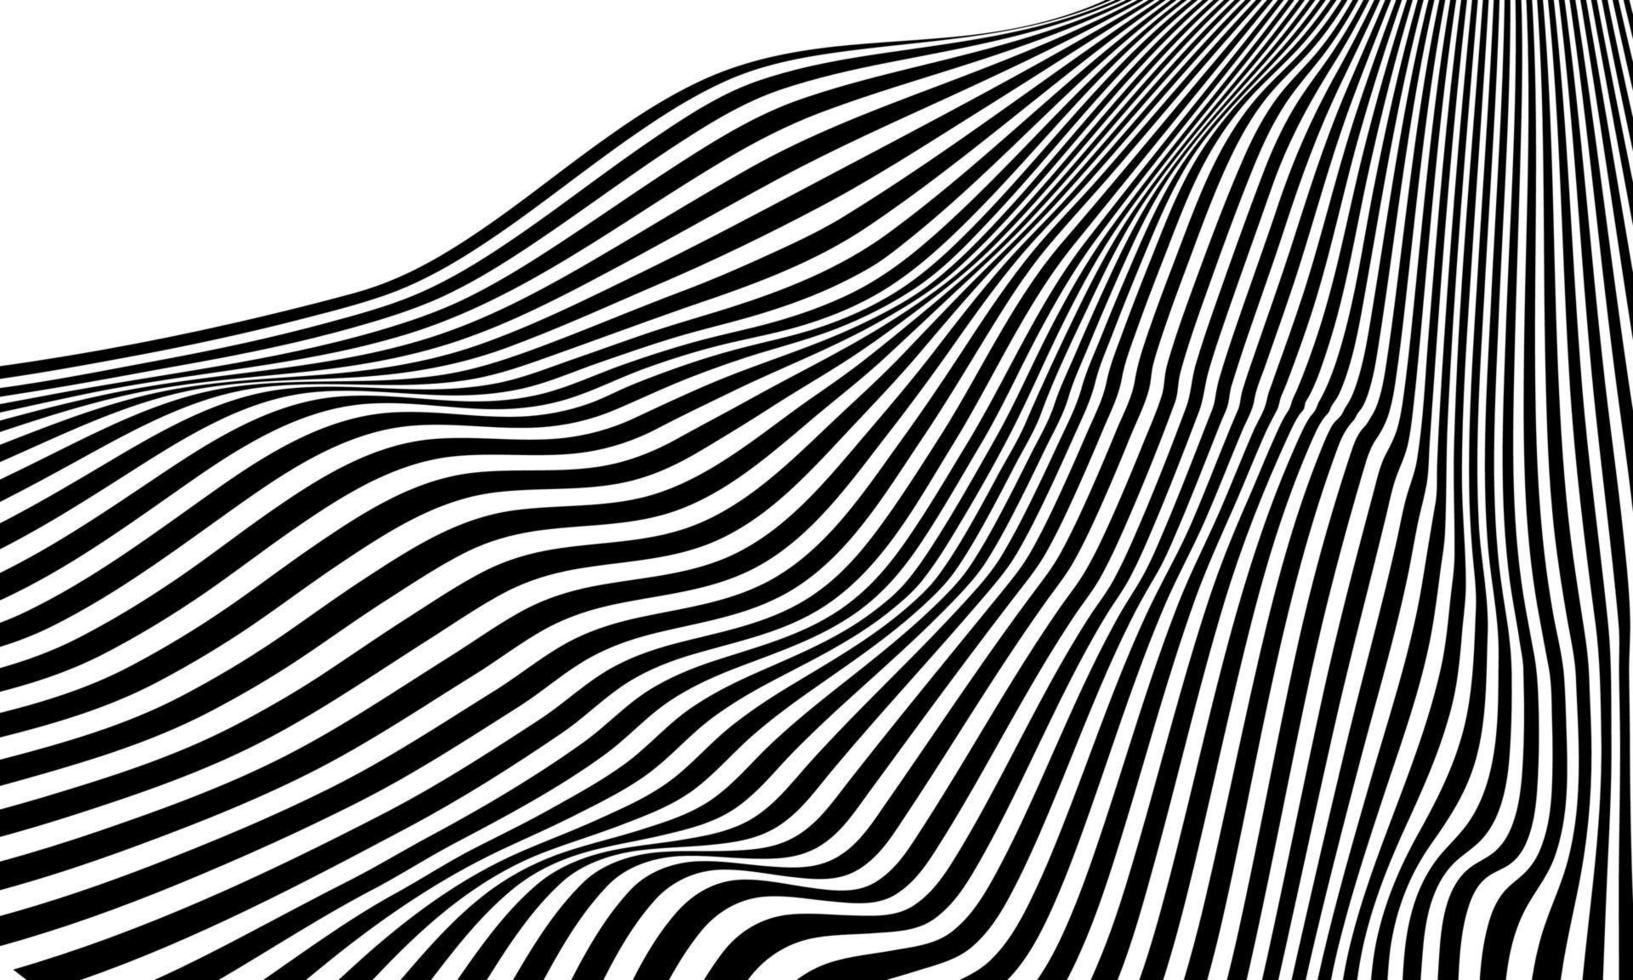 estoque abstrato preto branco cor padrão de design estilo óptico ilusão cartaz papel de parede backgound vetor